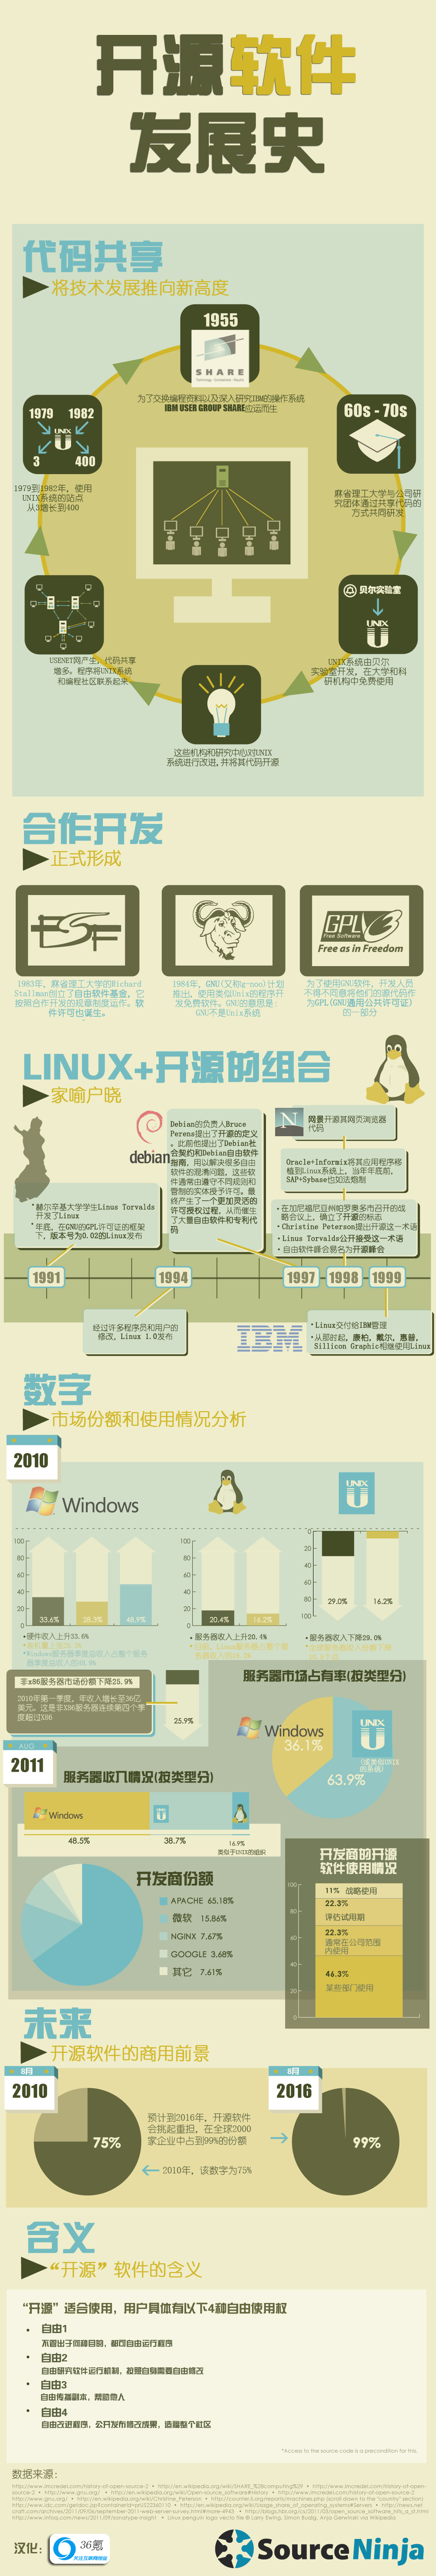 开源软件发展史【CHN】